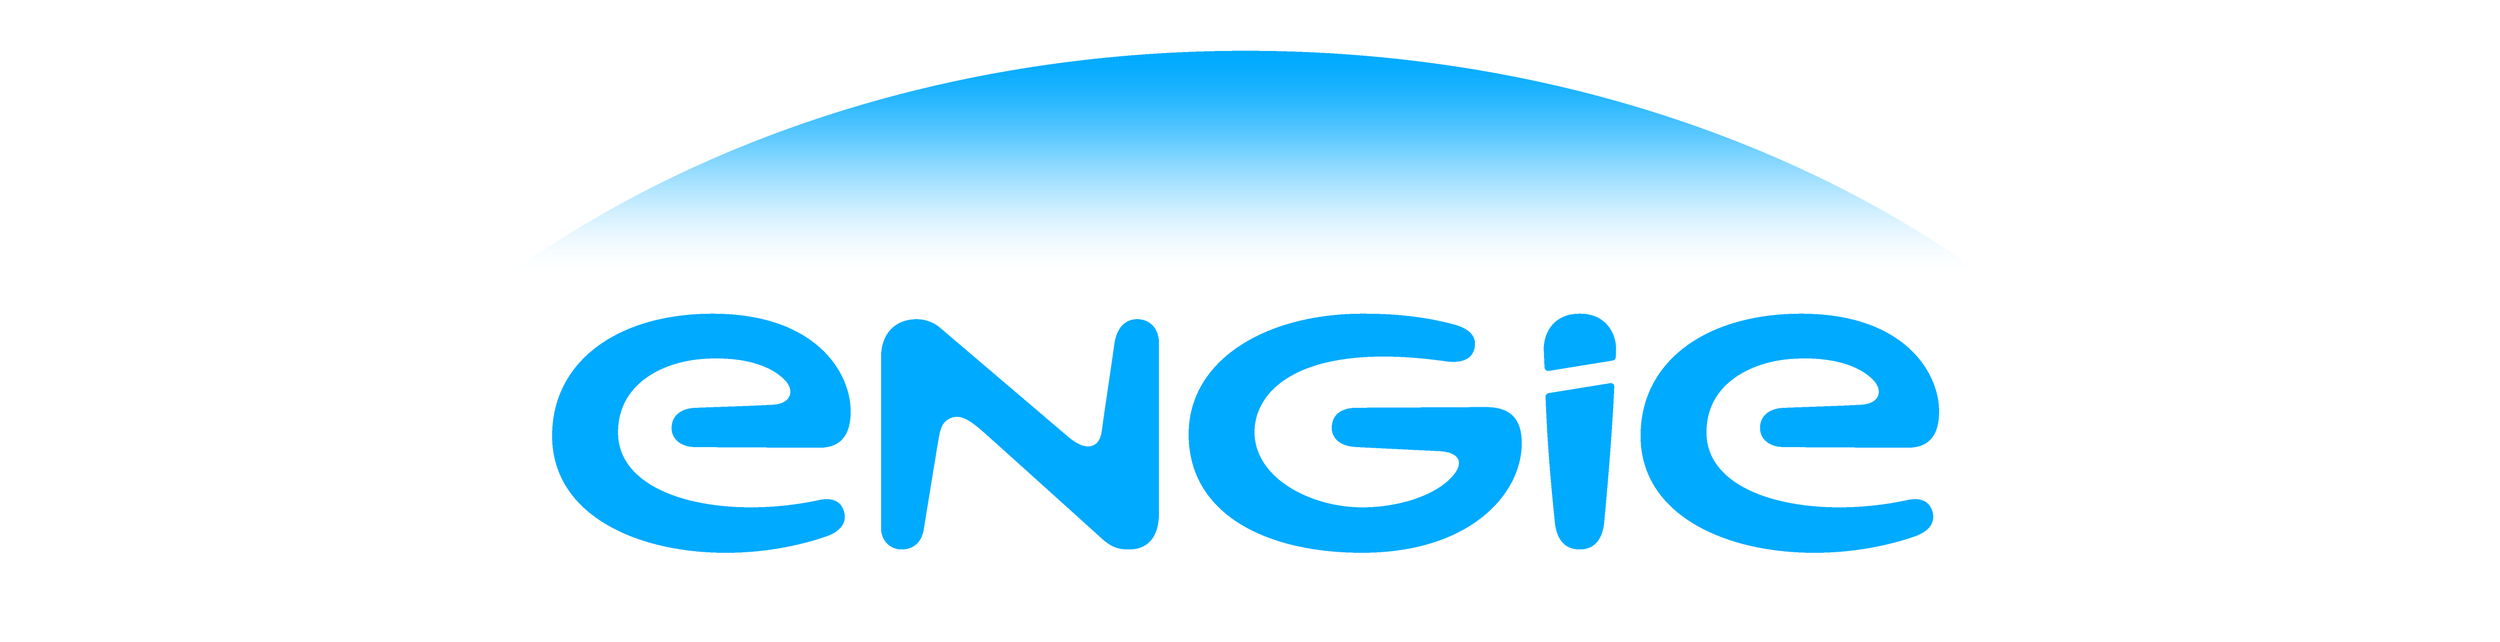 ENGIE_logo.png